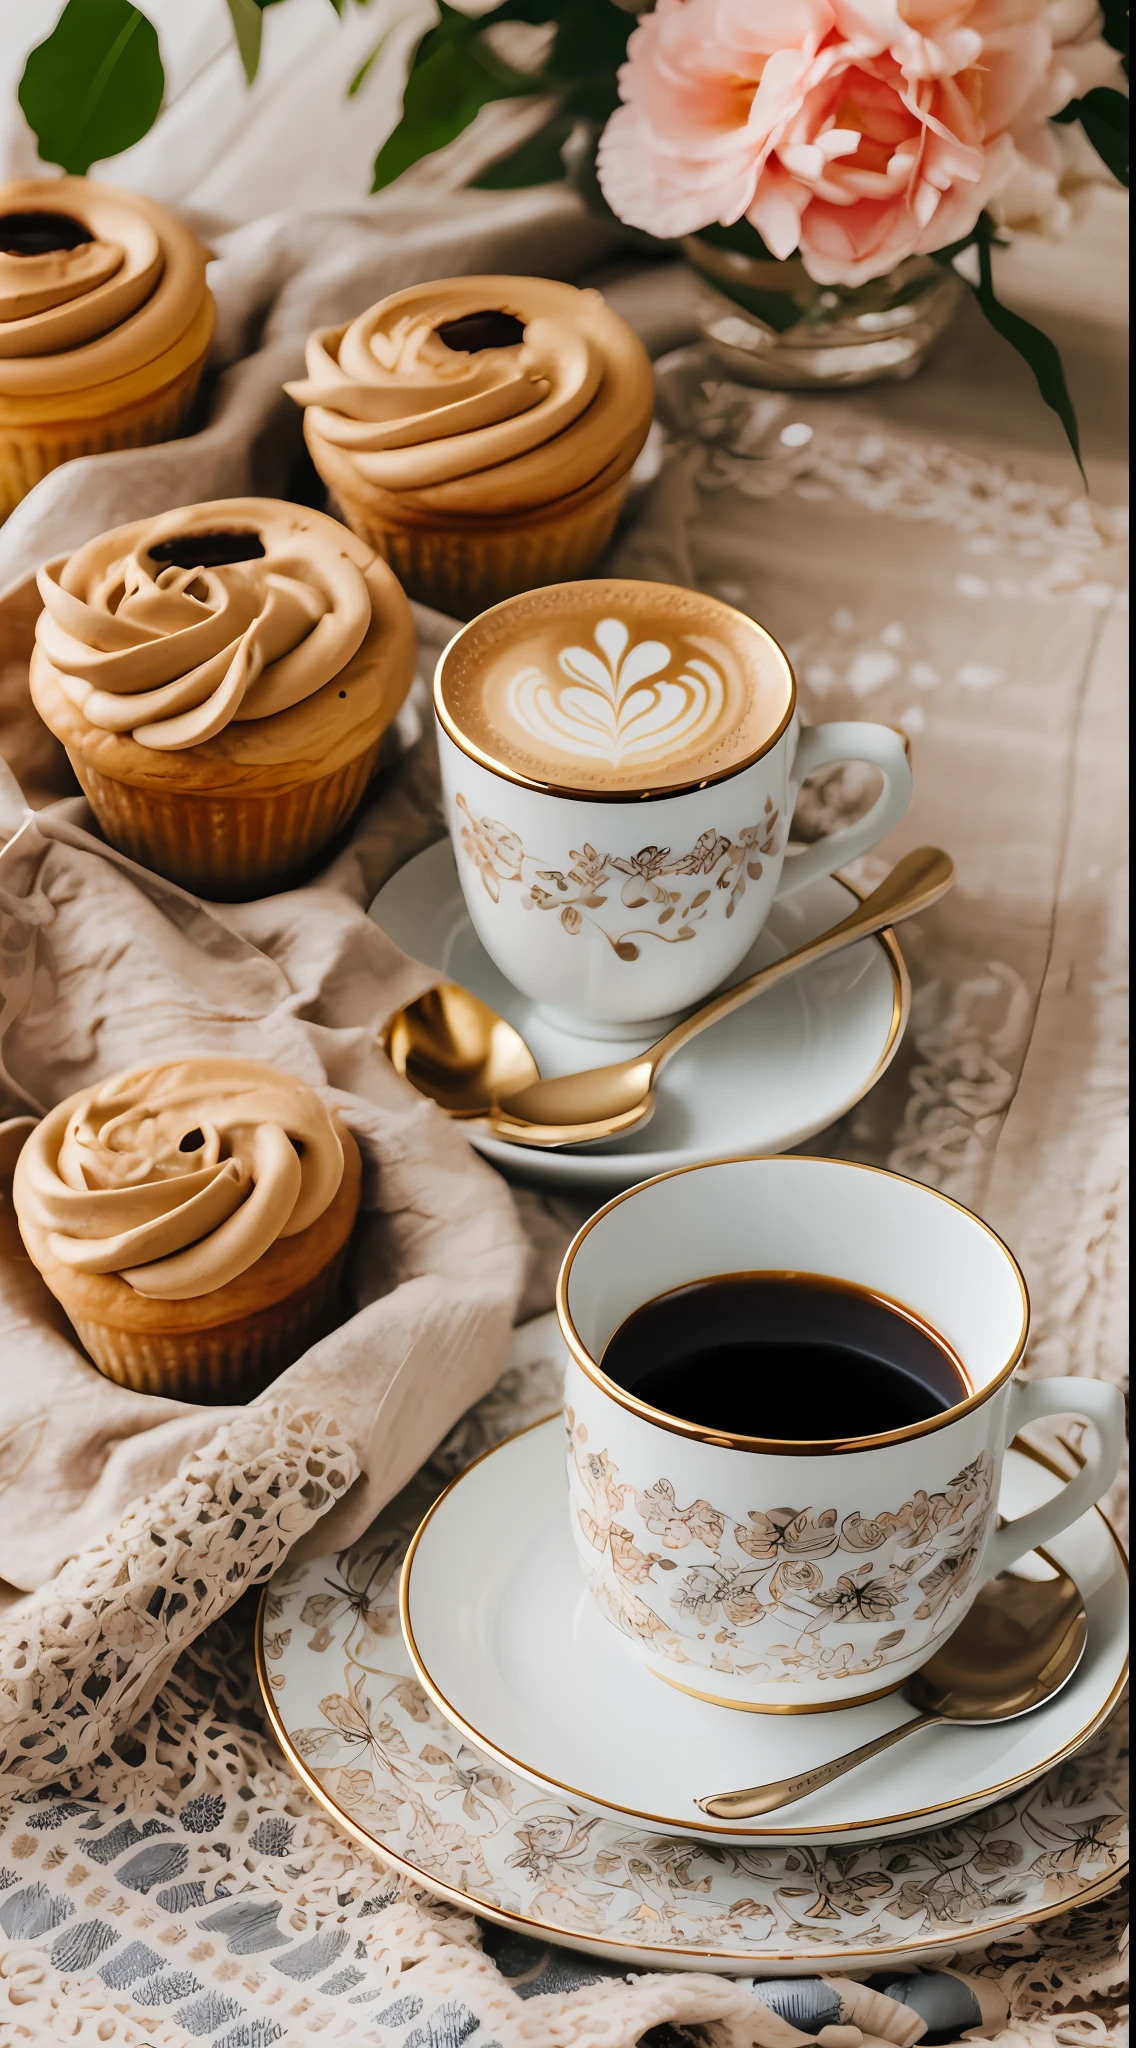 素敵なグルメカップに入ったコーヒー,  おはよう, 花柄プリント, 昼間の照明, フラワーズ, シック, 砂糖, Coffee BeansPrint フラワーズ, デザート, レース, 結晶,  ゴールデンライン, プロ,  現実的, 最高品質, 傑作, 水玉テーブルクロス, フルカラー, ペストリー --auto --s2